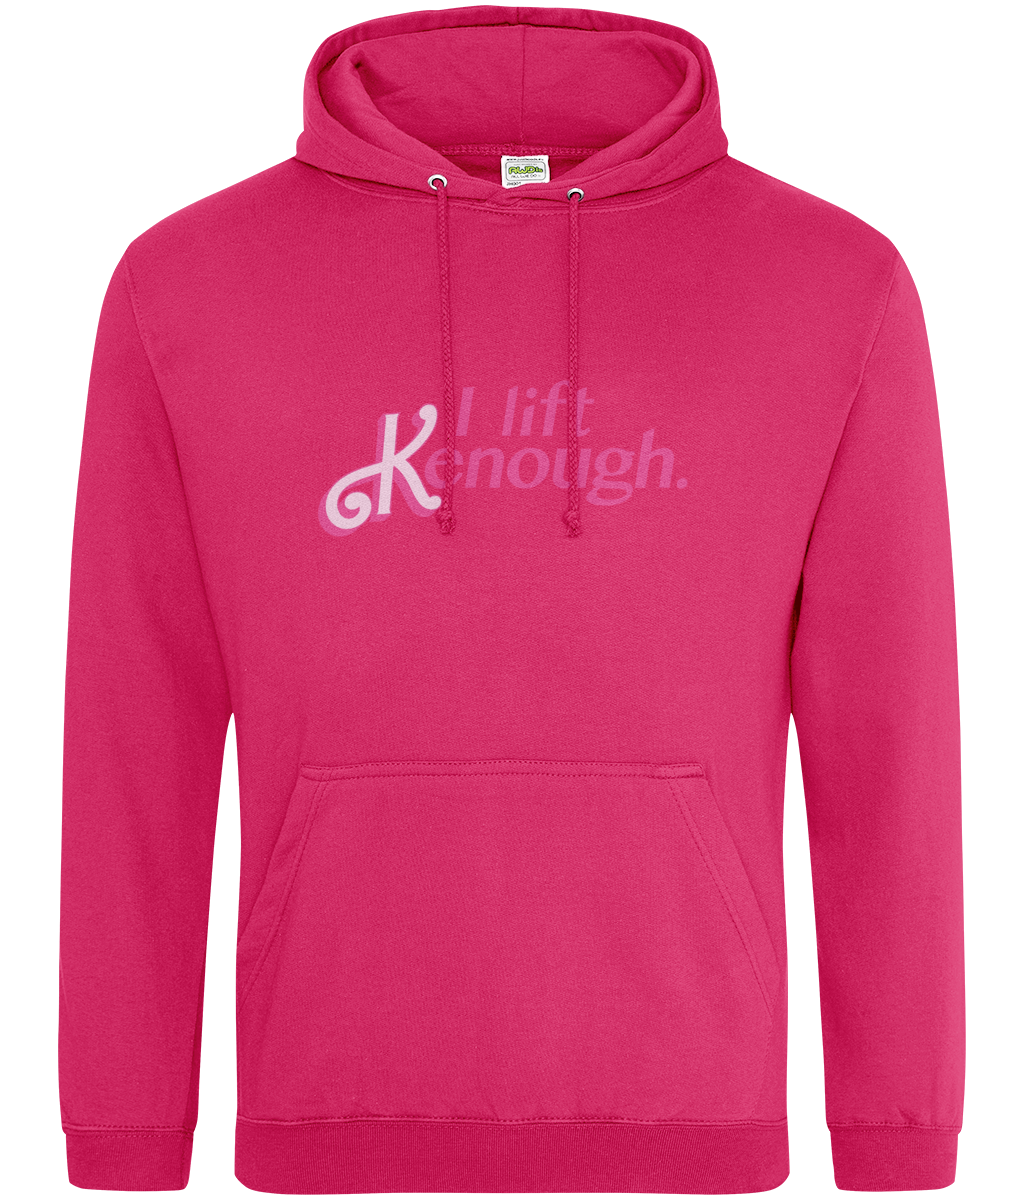 Lift Kenough hoodie